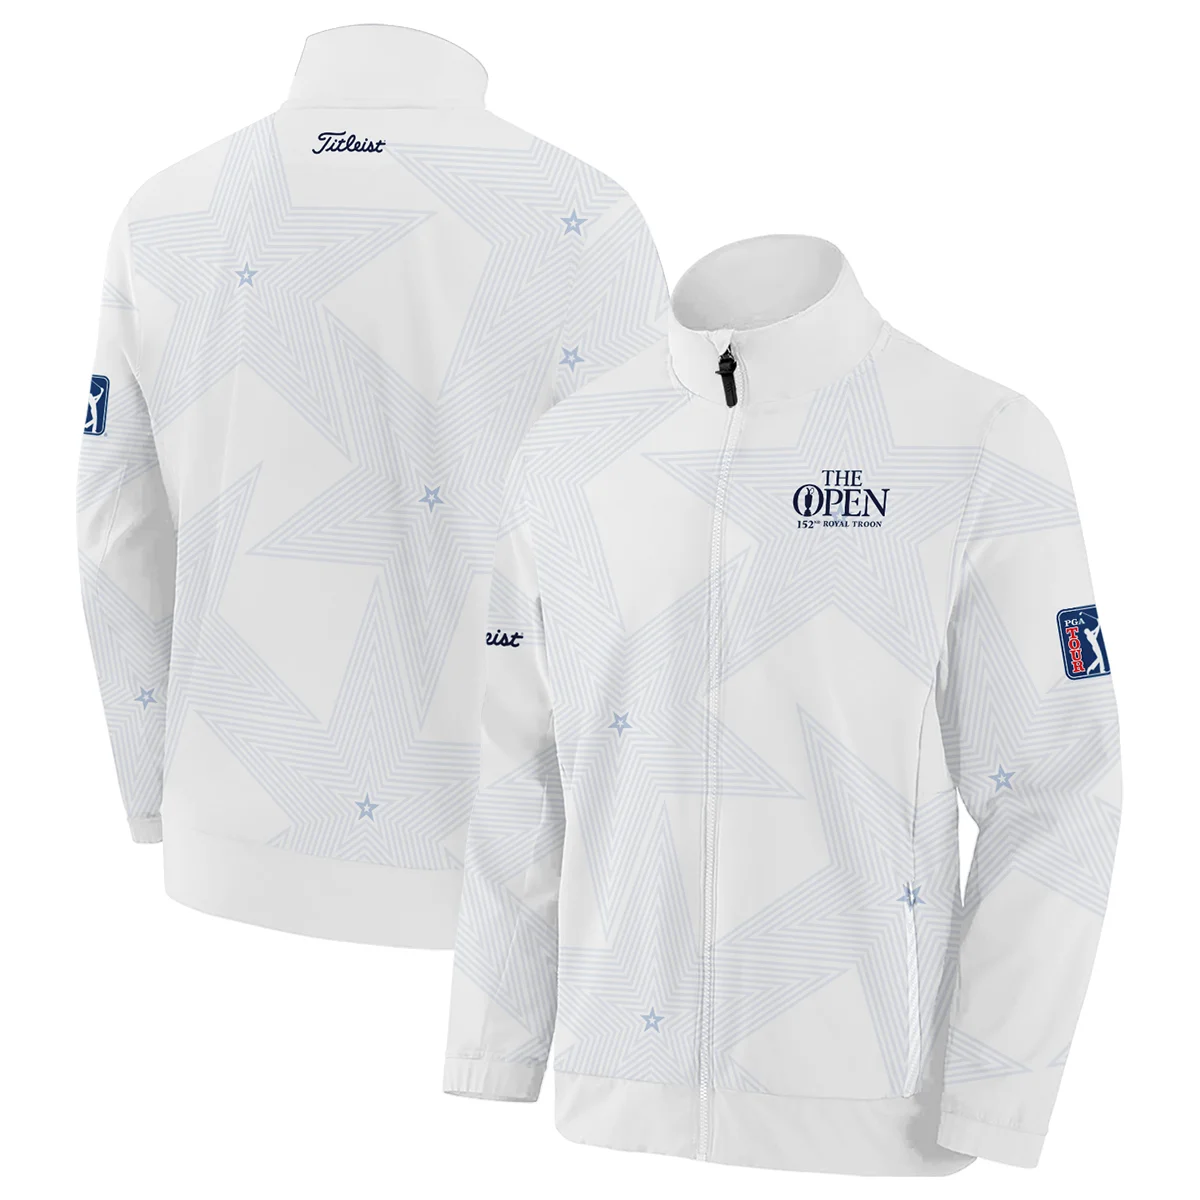 The 152nd Open Championship Golf Sport Titleist Zipper Hoodie Shirt Sports Star Sripe White Navy Zipper Hoodie Shirt